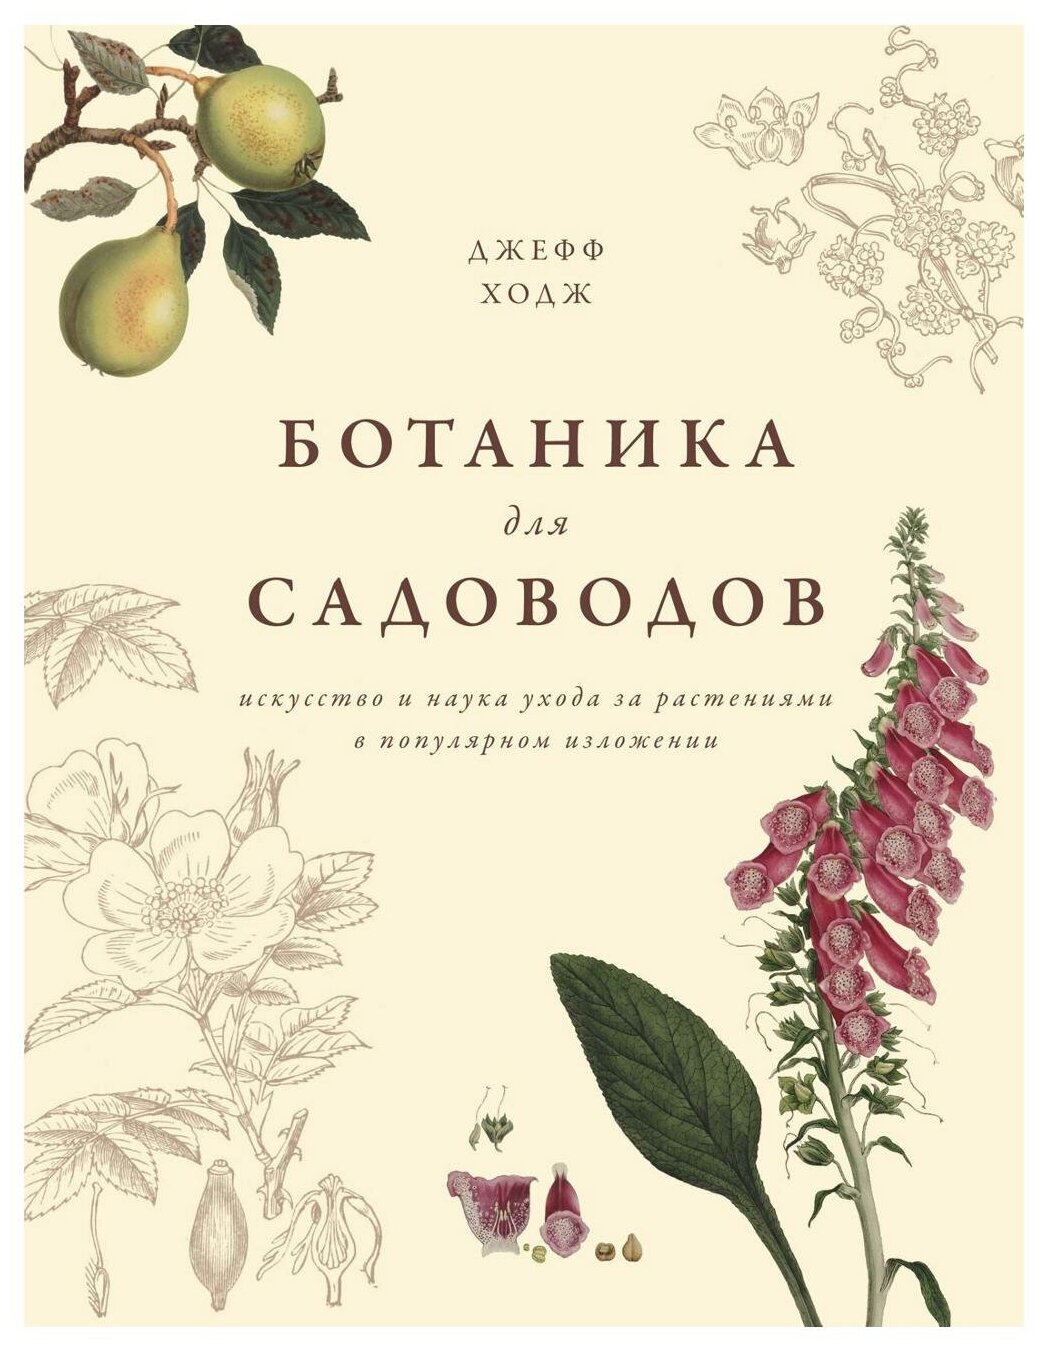 Ходж Дж. "Книга Ботаника для садоводов. Ходж Дж."